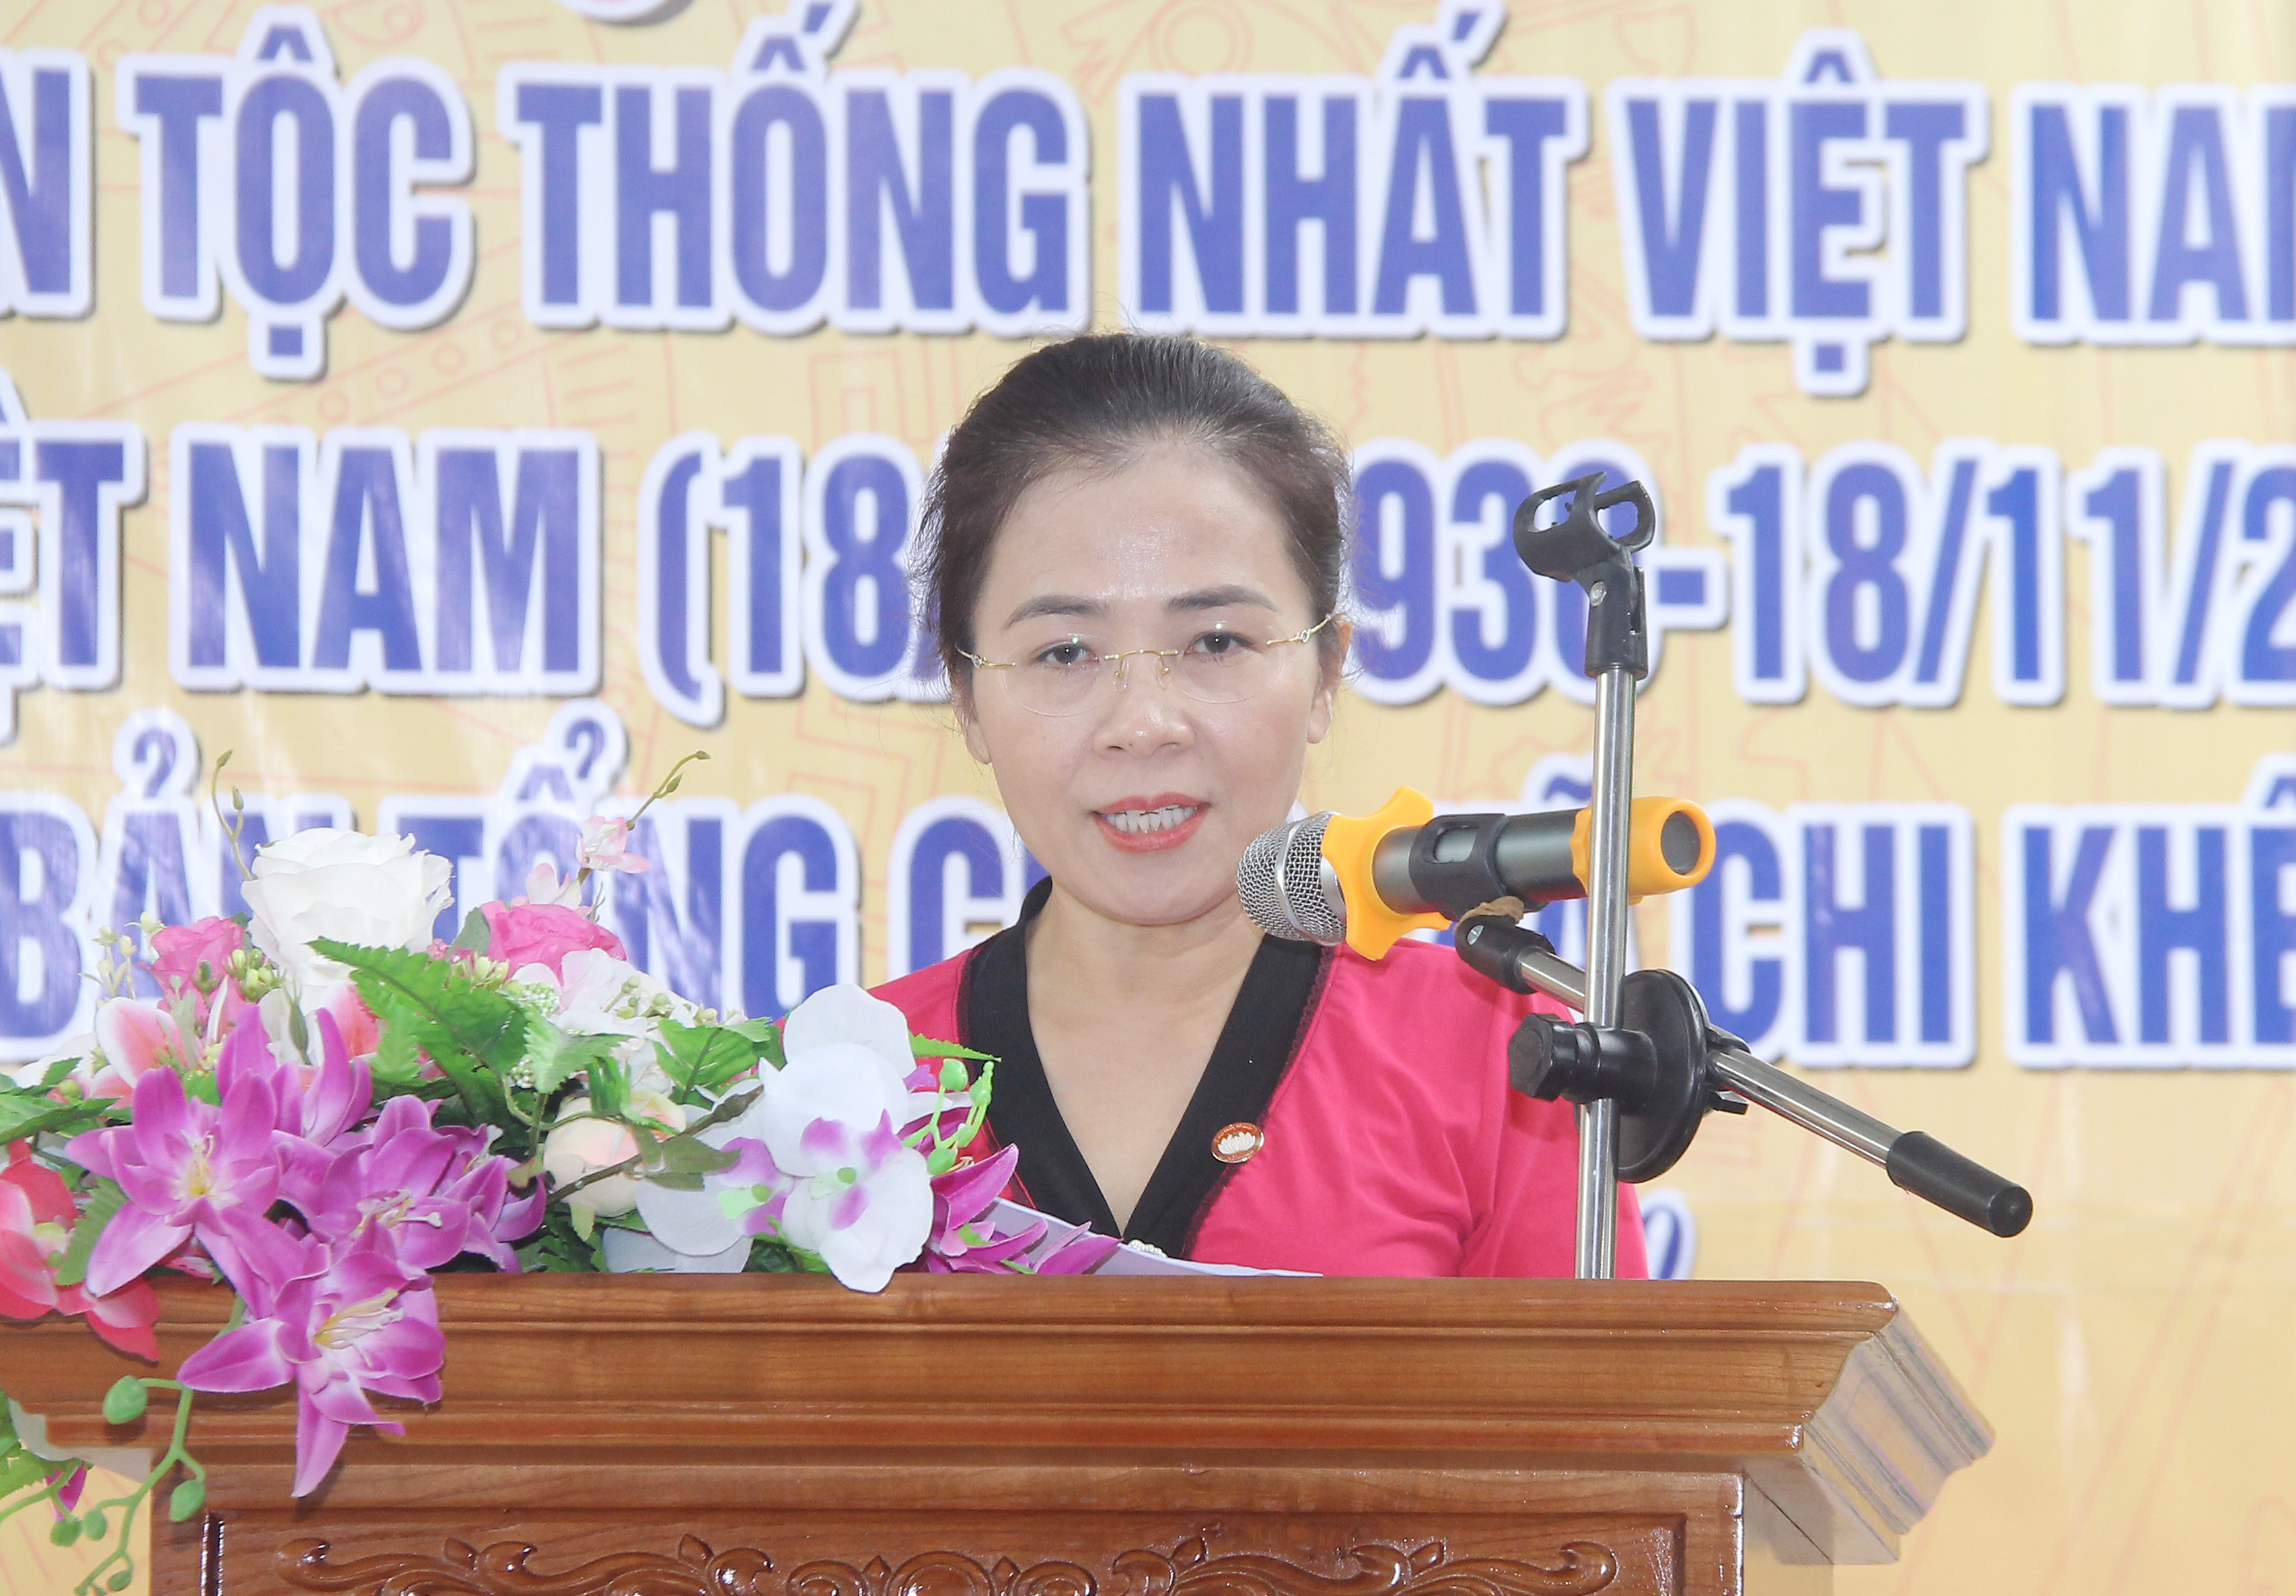 Đồng chí Võ Thị Minh Sinh - Ủy viên Ban Thường vụ Tỉnh ủy, Chủ tịch Ủy ban MTTQ Việt Nam tỉnh Nghệ An trao quà cho trẻ bị bại não tại chương trình. Ảnh: Mai Hoa